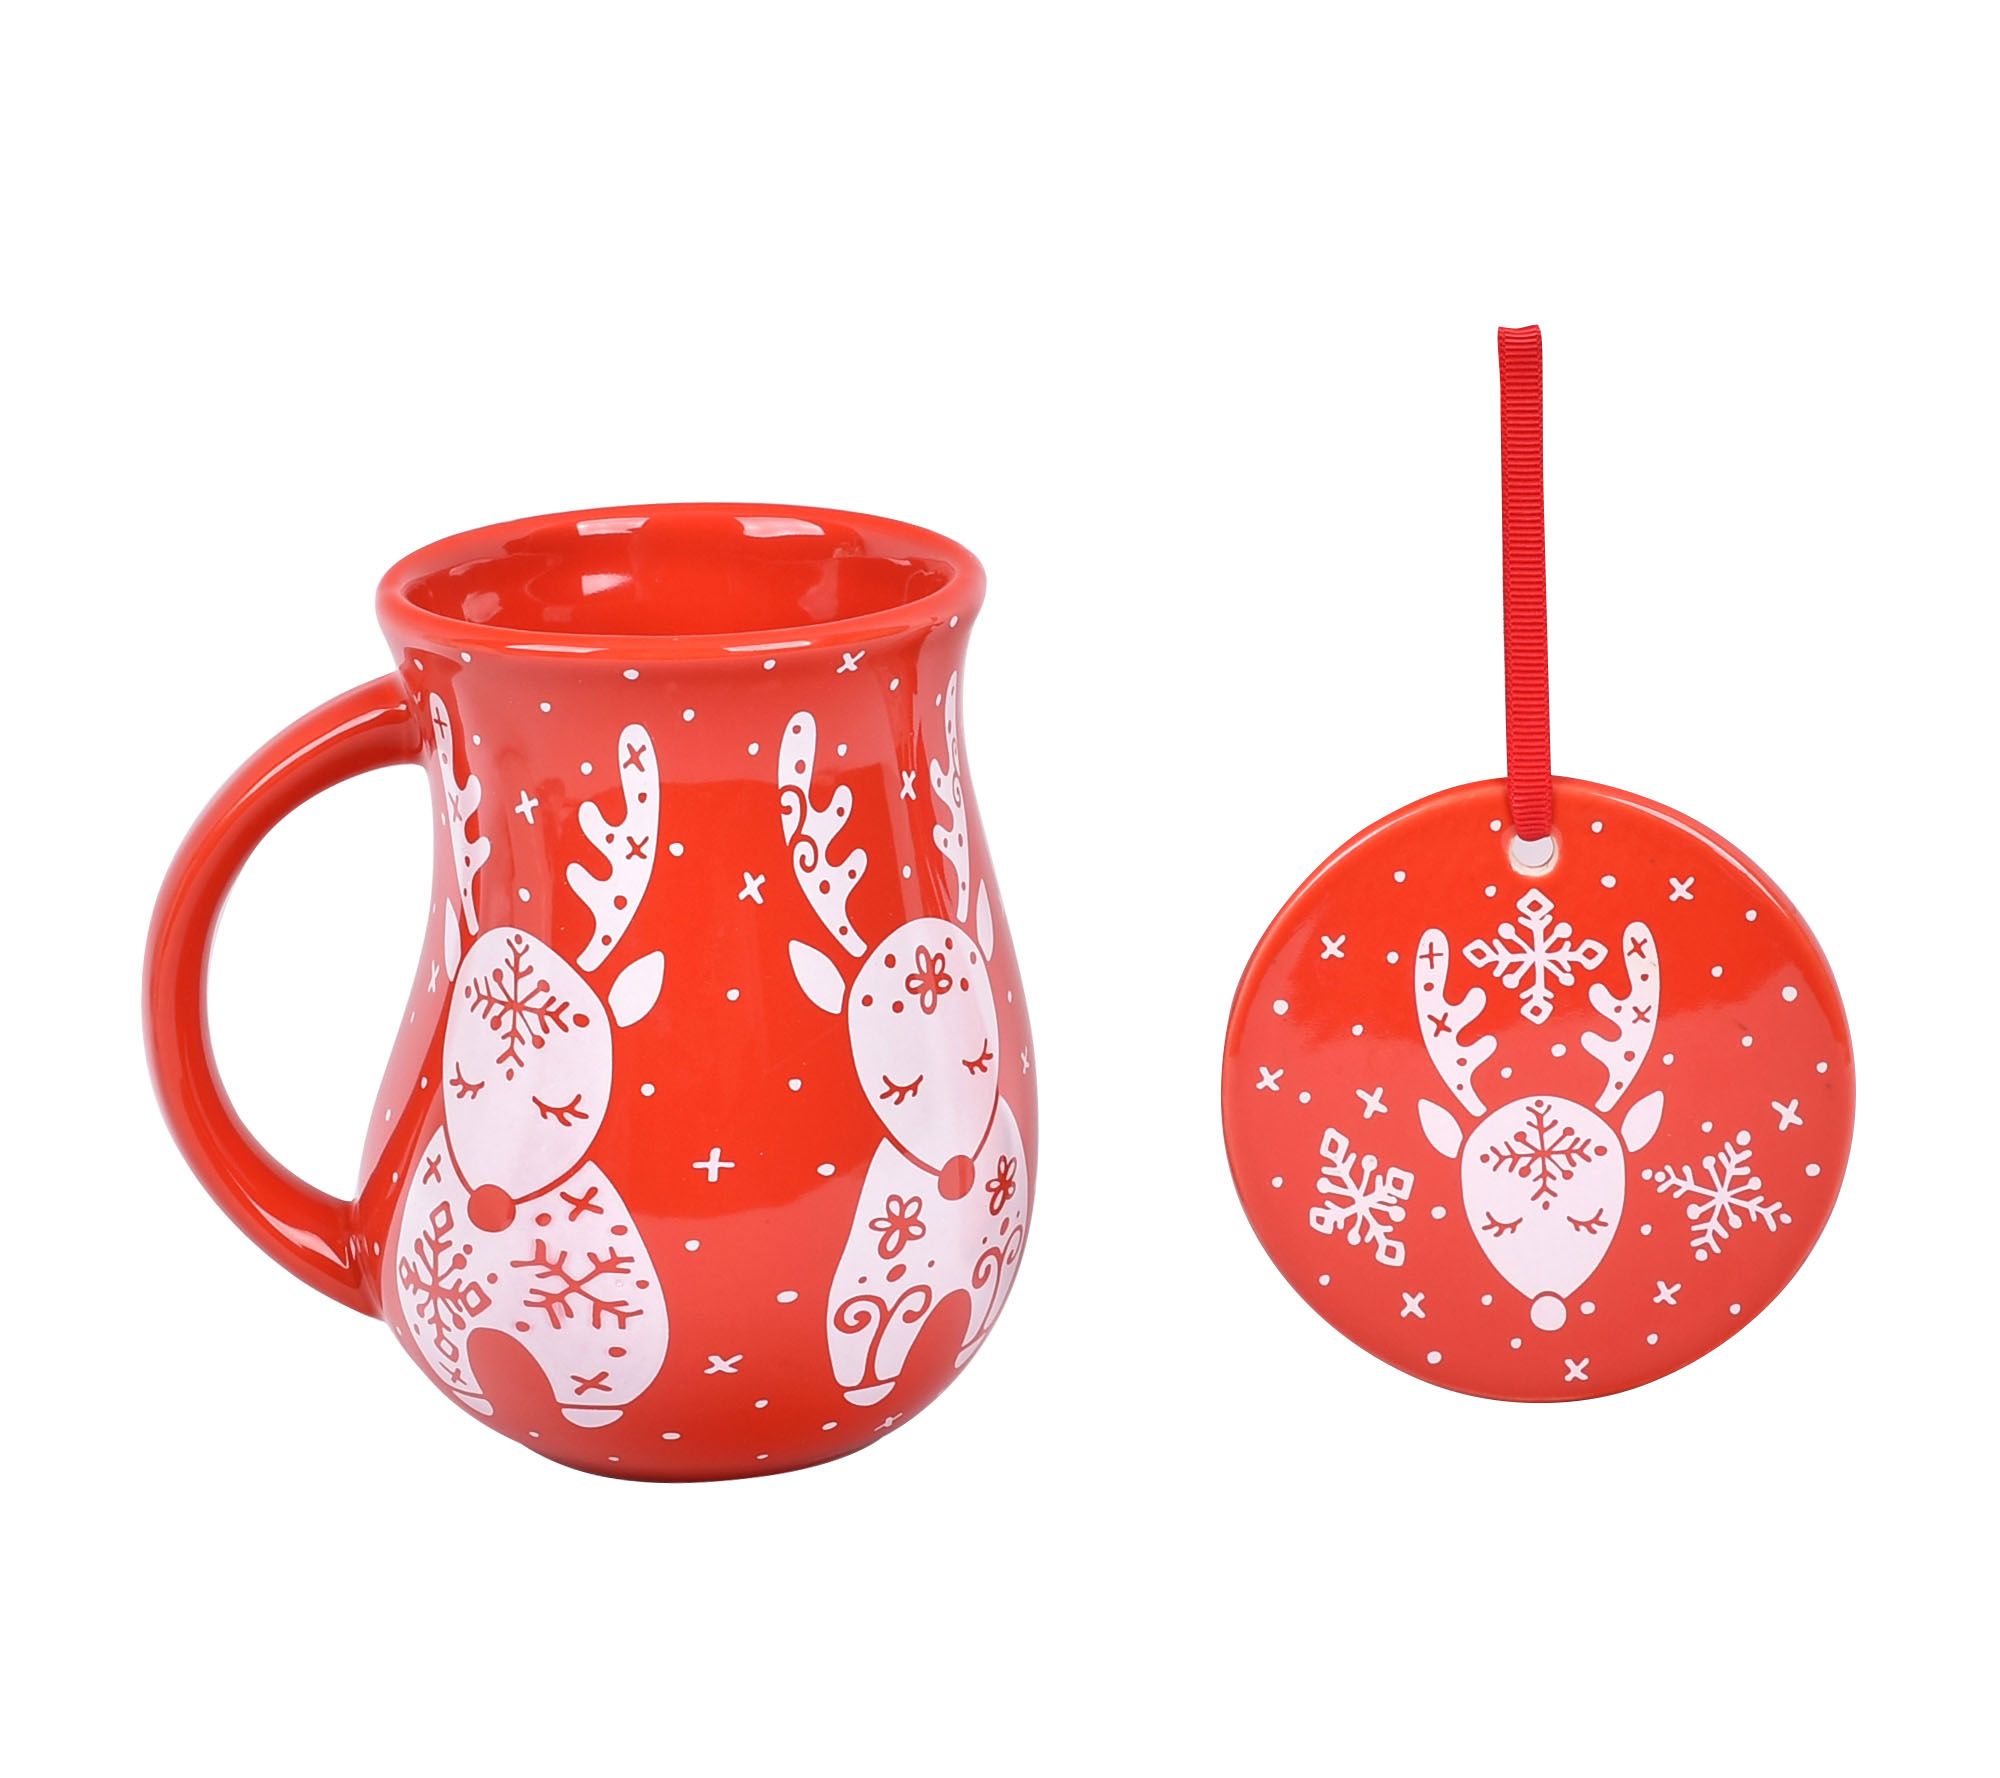 Temp-Tations 14-oz Ceramic Mug withWarming Base ,Red